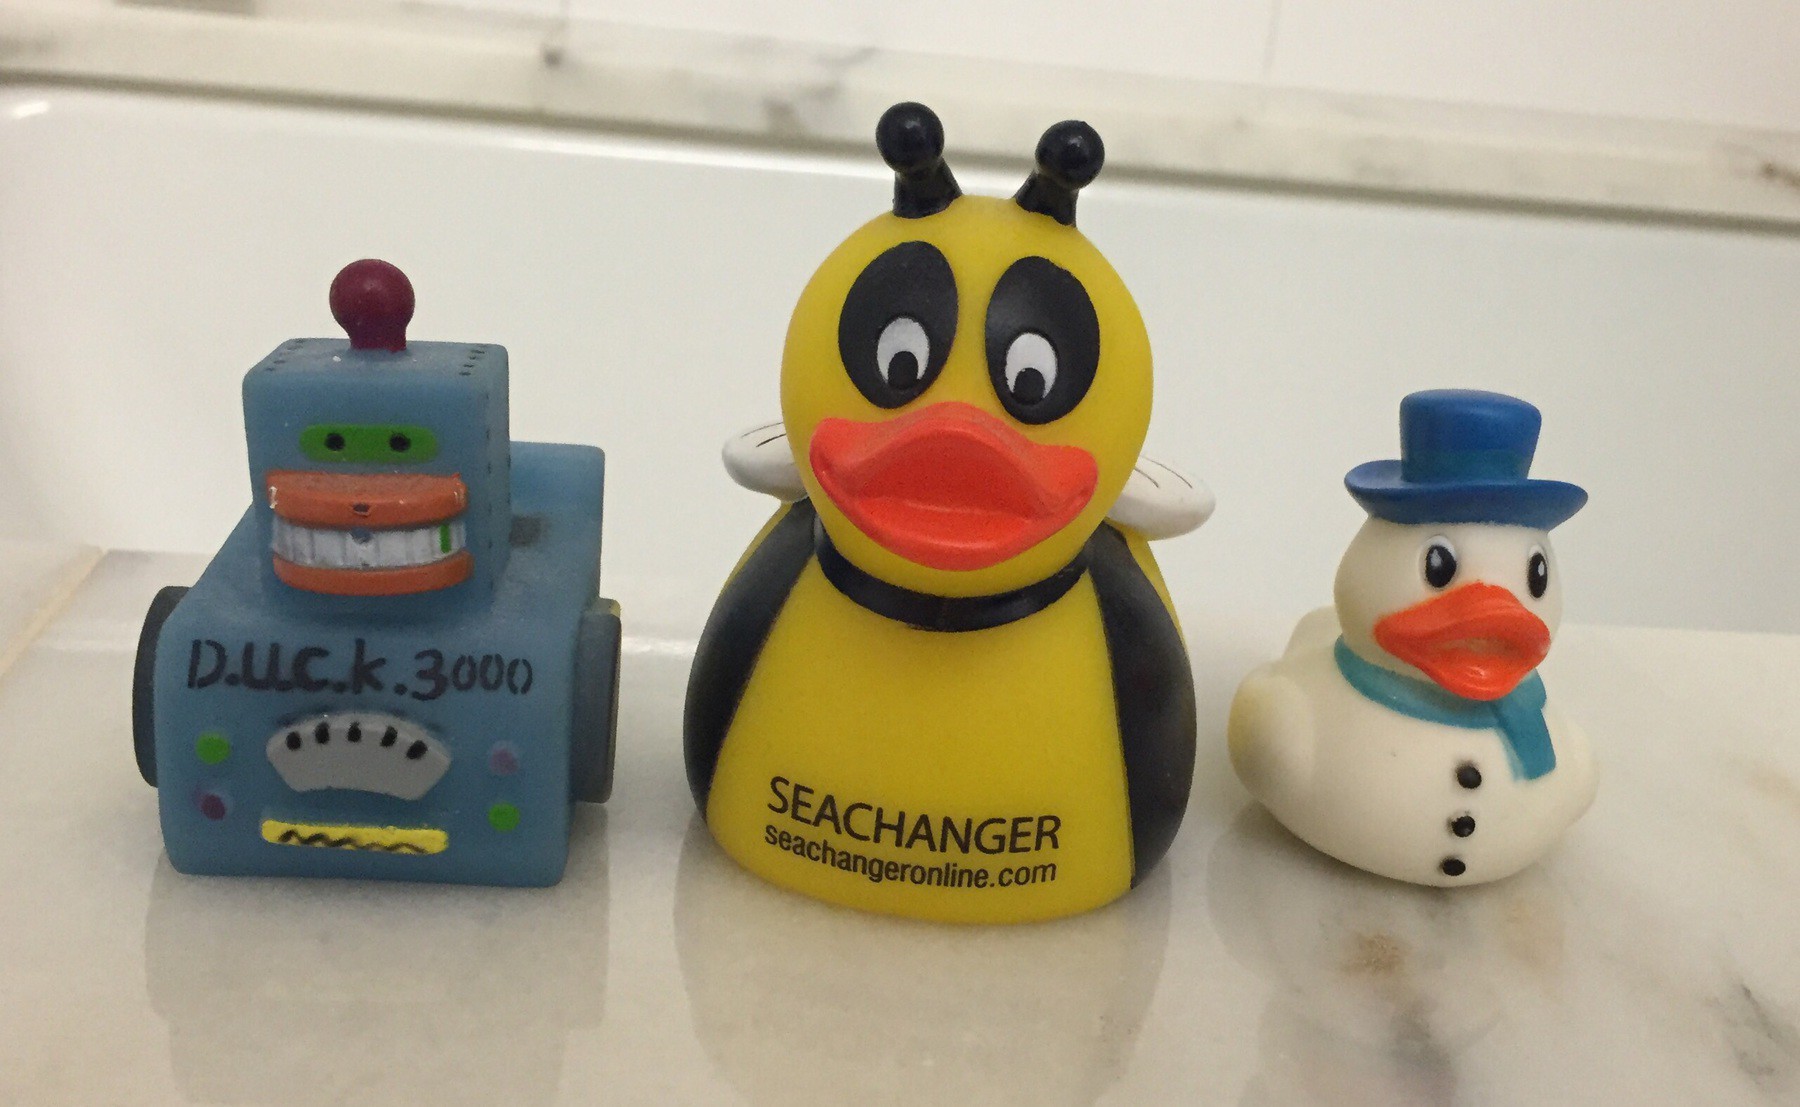 Three plastic ducks—robot duck 3000, bumblebee duck, and snowman duck.